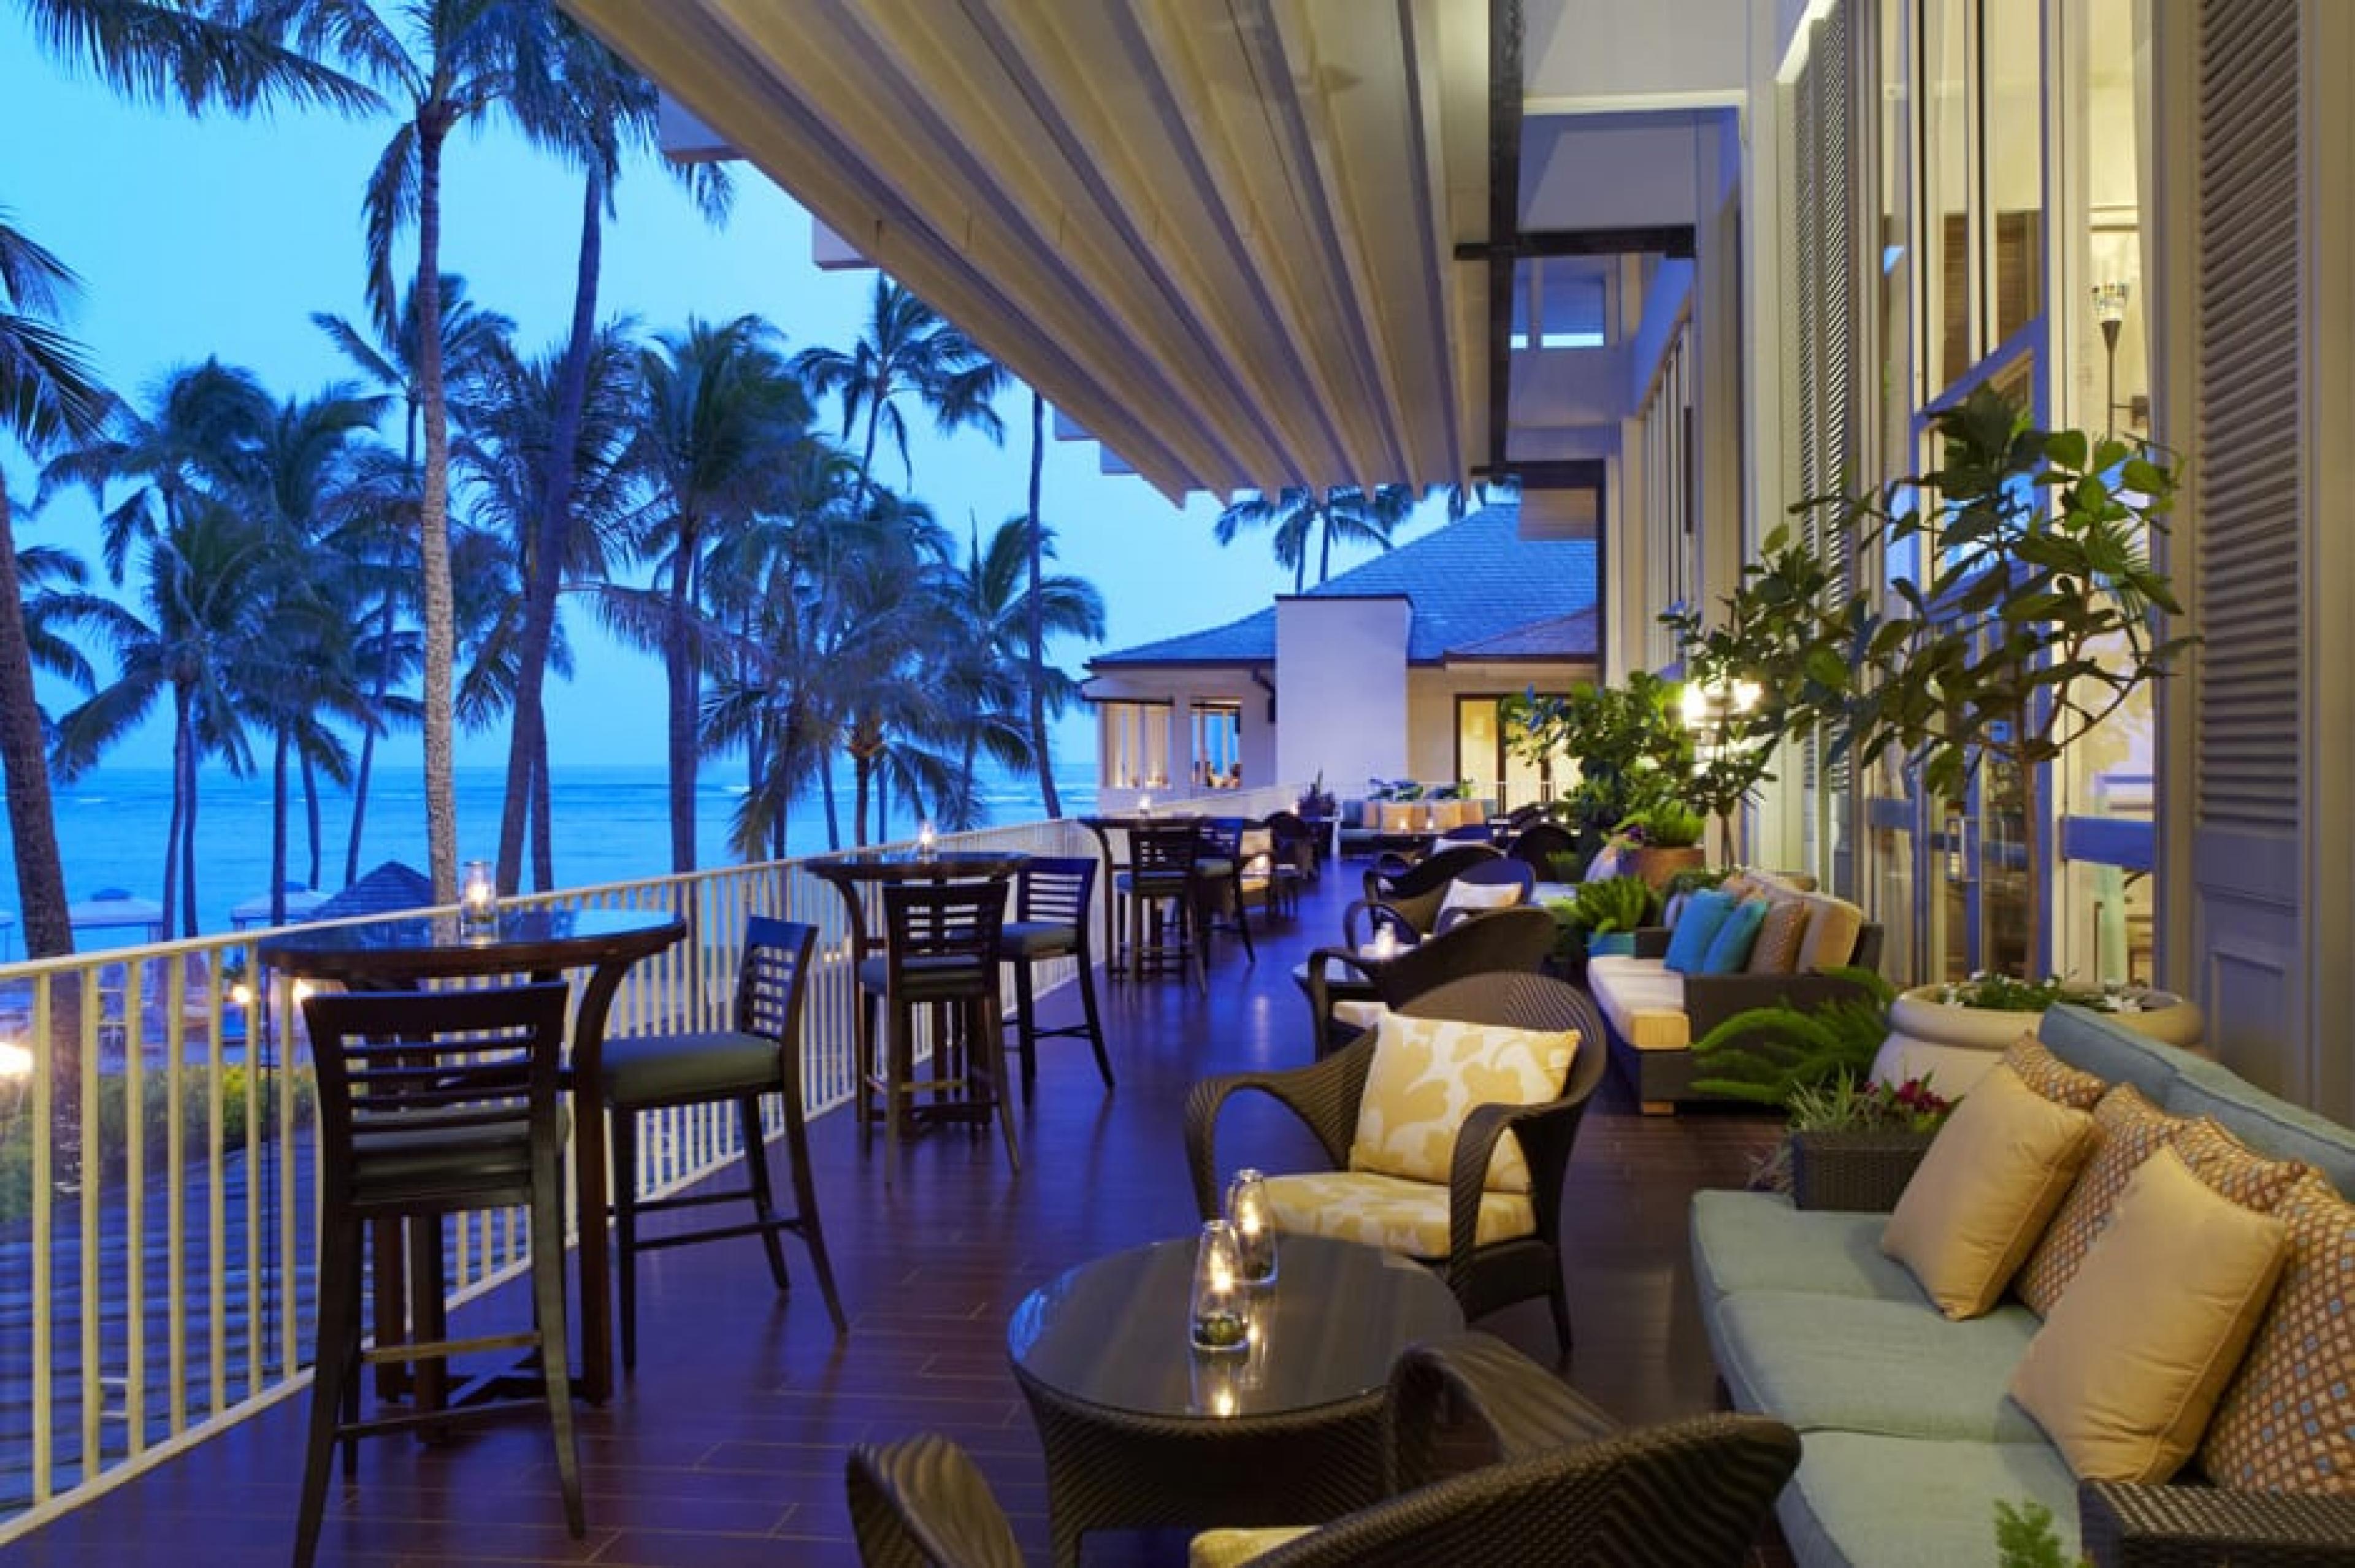 Veranda Balcony Bar at Kahala Hotel & Resort, Oahu, Hawaii